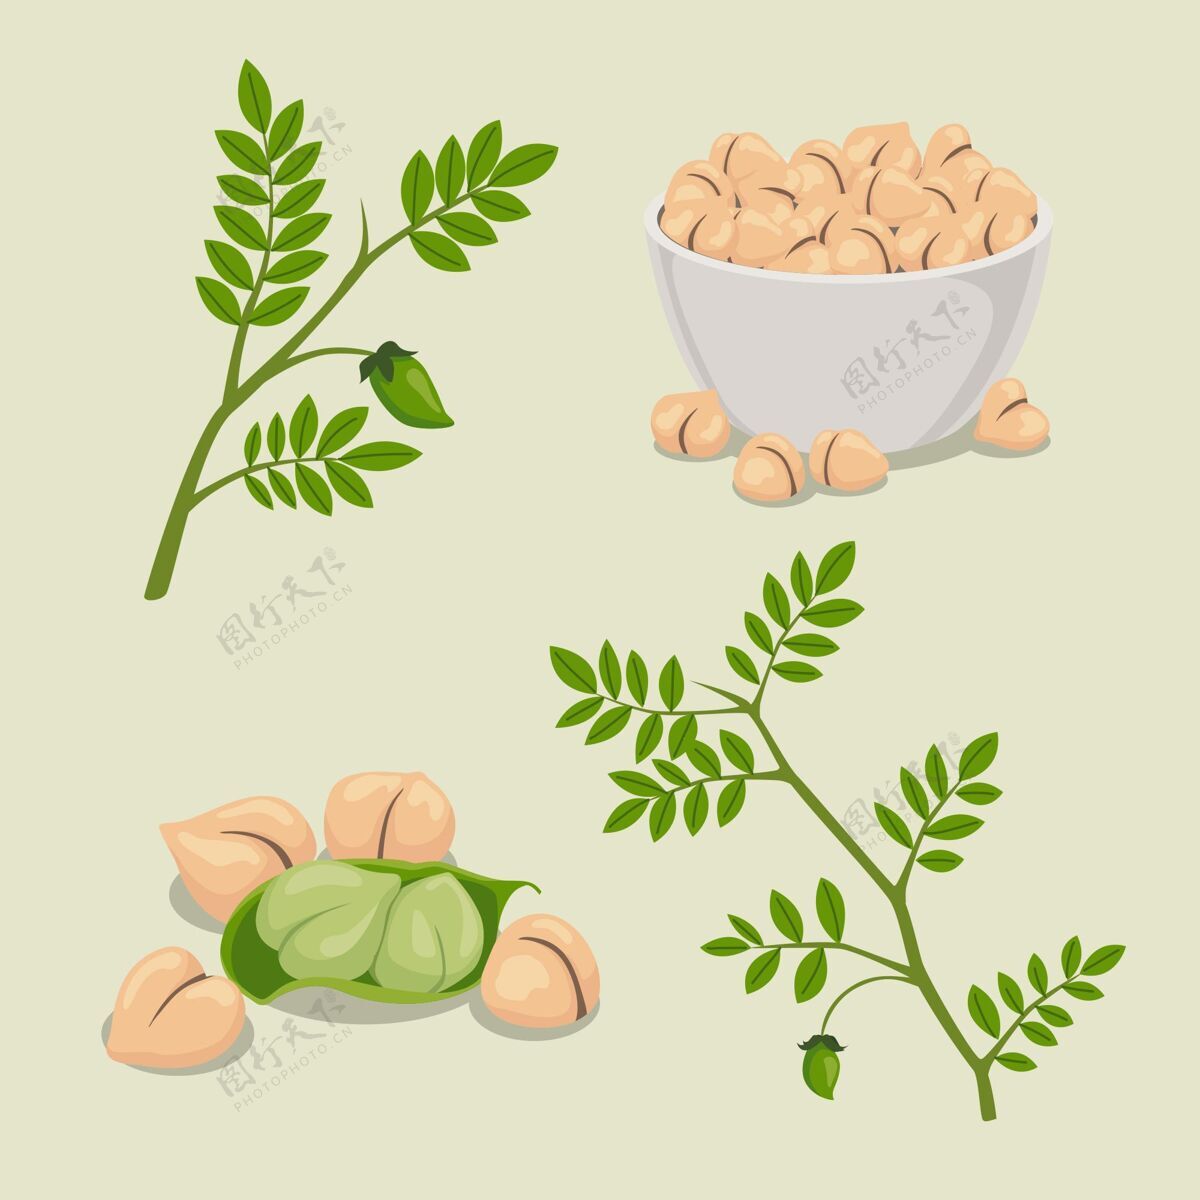 食品用植物插图画鹰嘴豆豆类营养食品